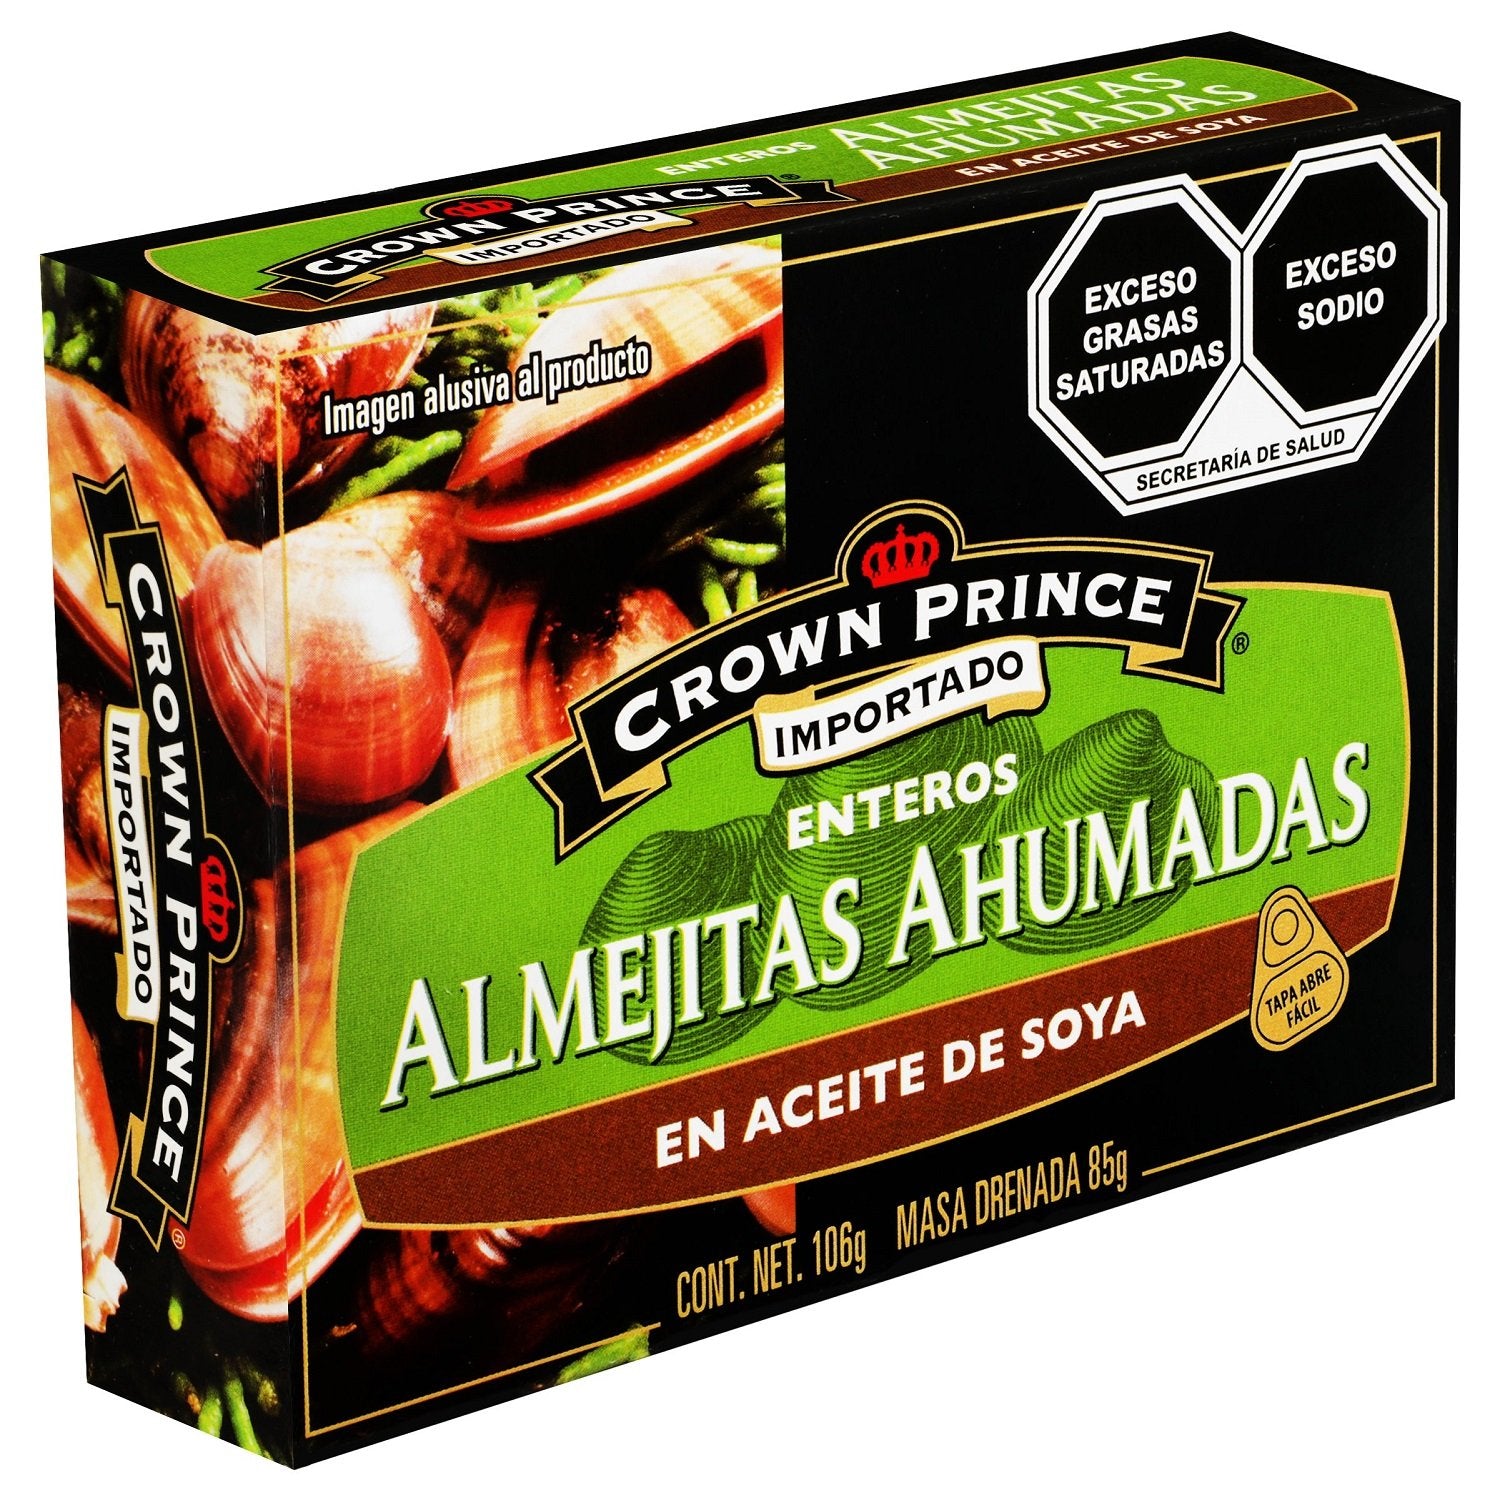 Crown Prince - Almejitas Ahumadas en Aceite de Soya - 106 gr